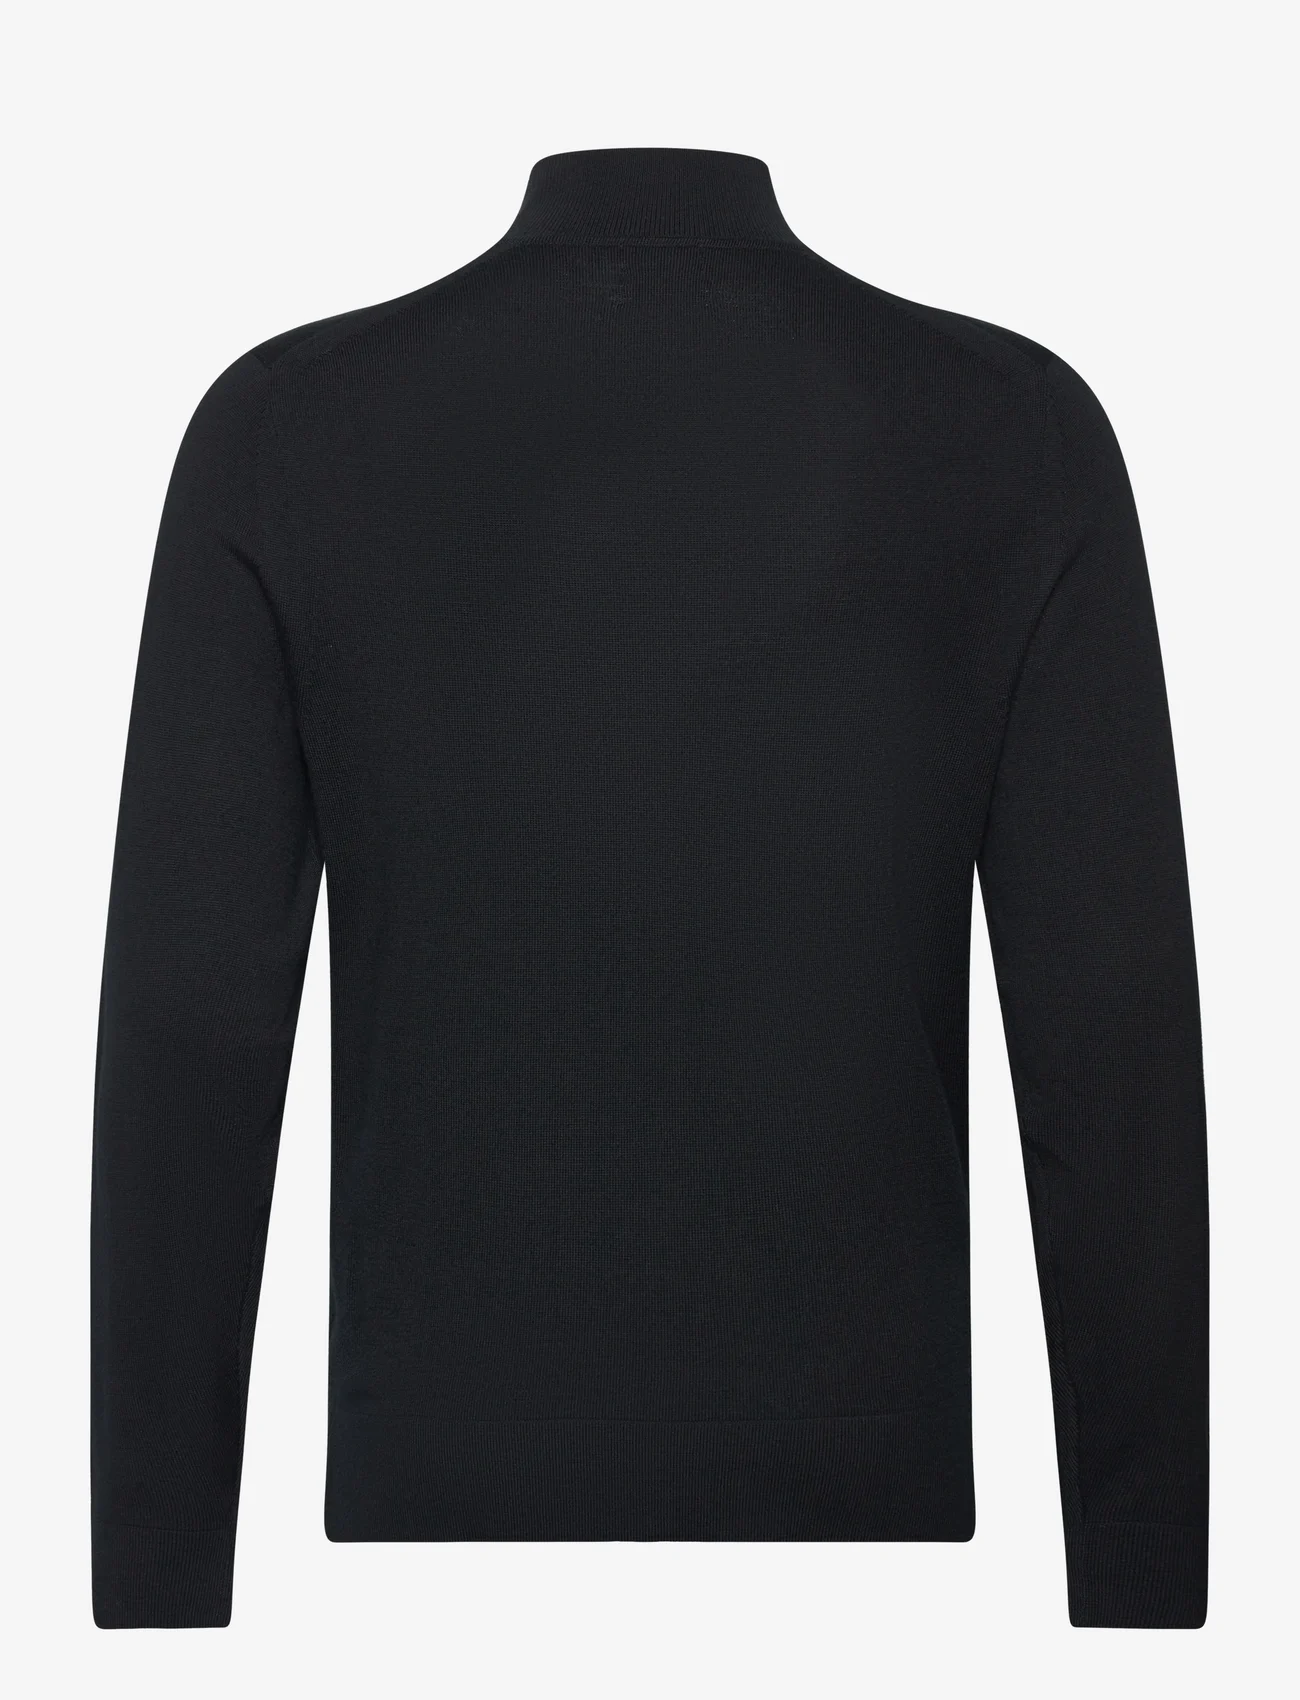 Calvin Klein - MERINO MOCK NECK SWEATER - megztiniai su aukšta apykakle - ck black - 1